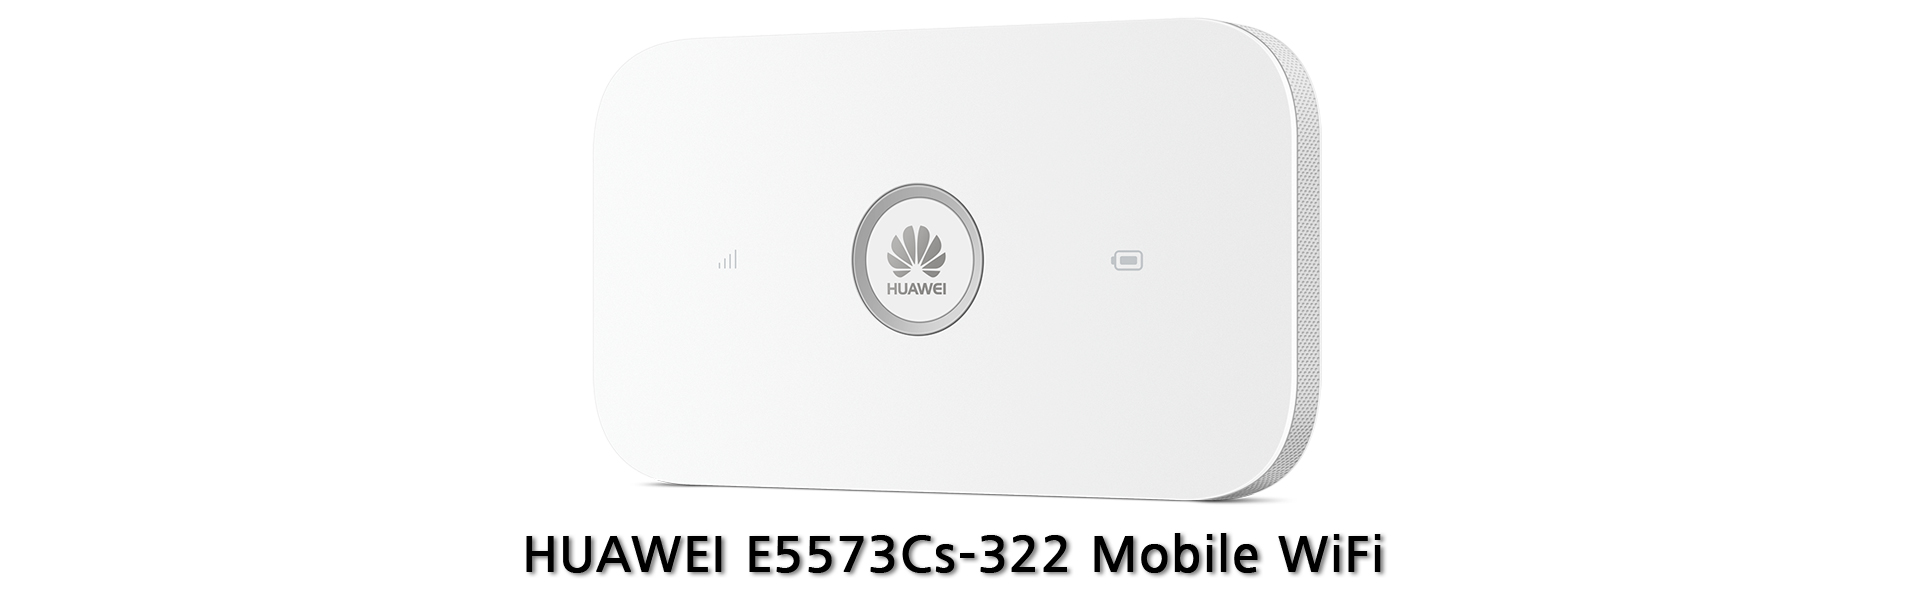 HUAWEI E5573Cs